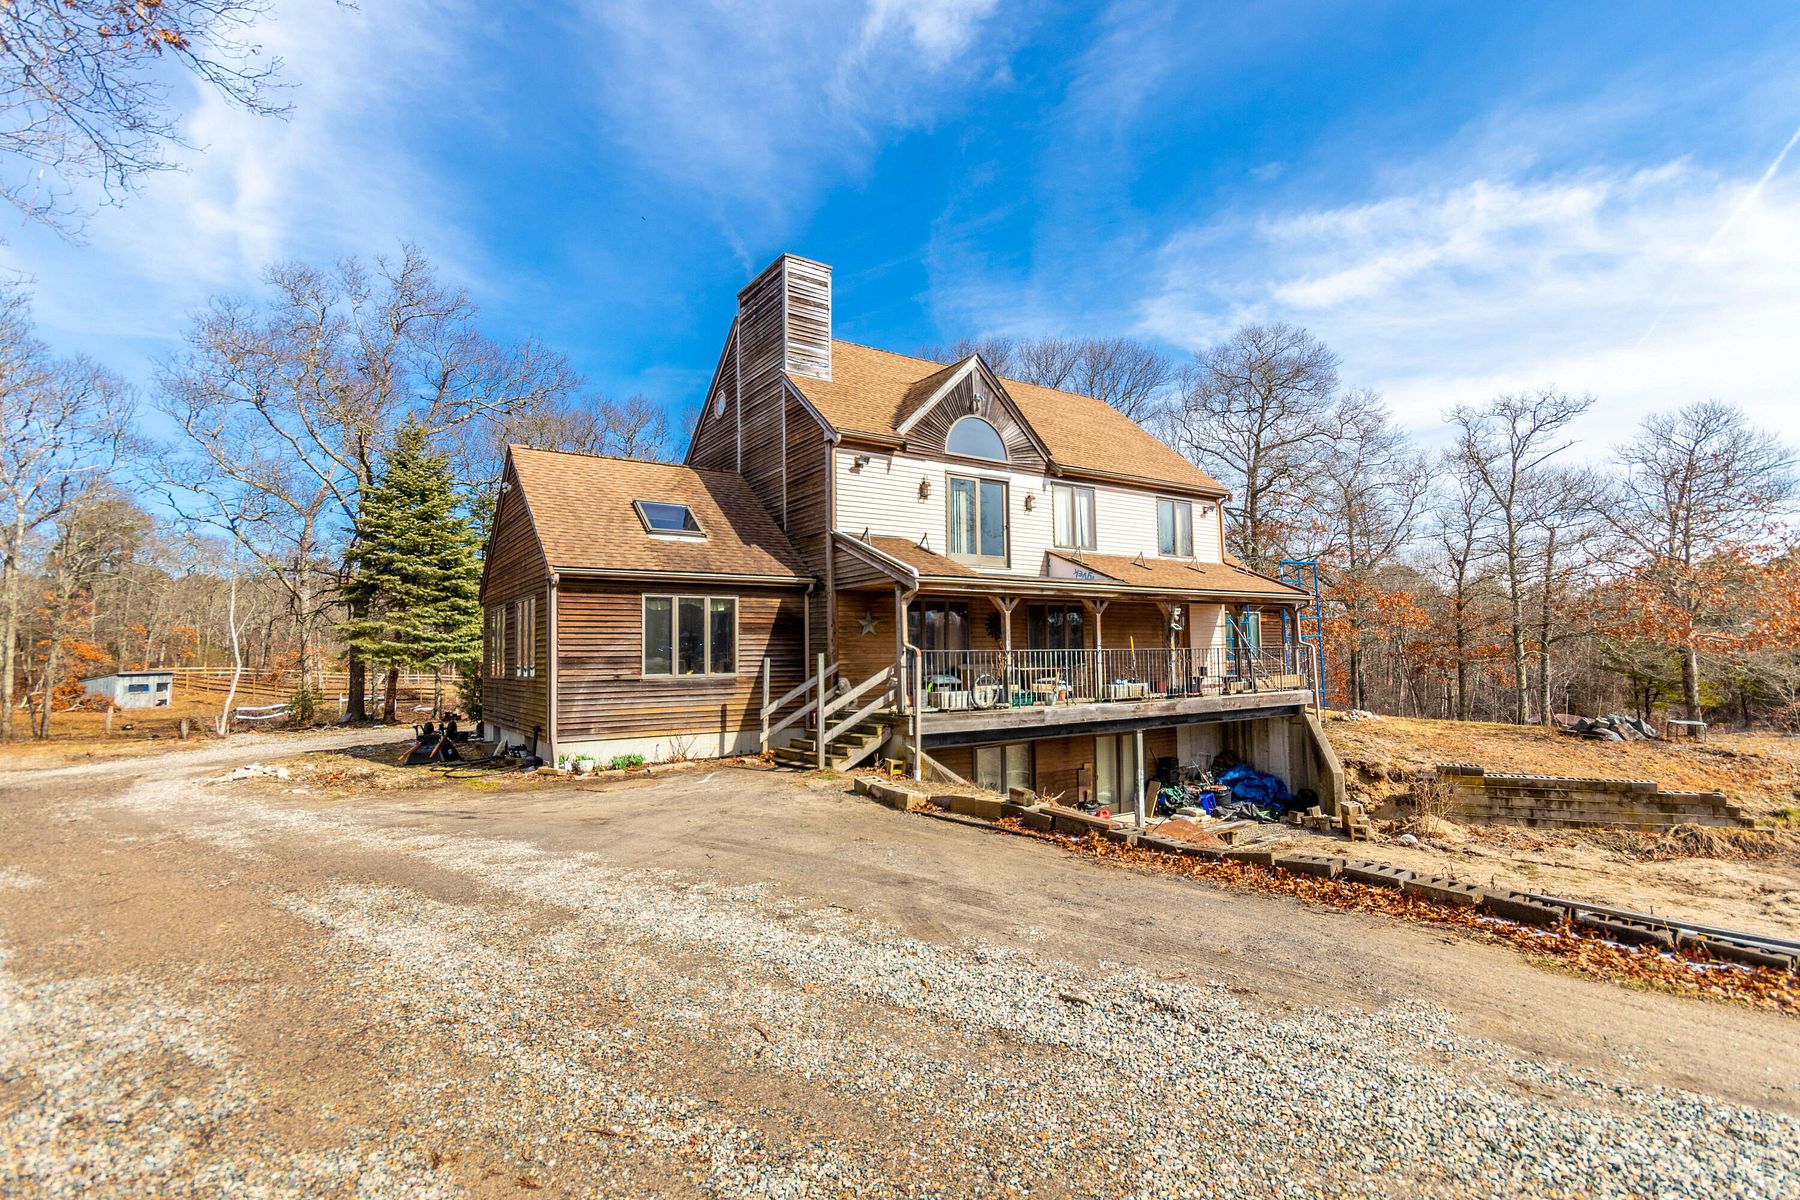 7.9 Acres of Residential Land & Home Mashpee, Massachusetts, MA